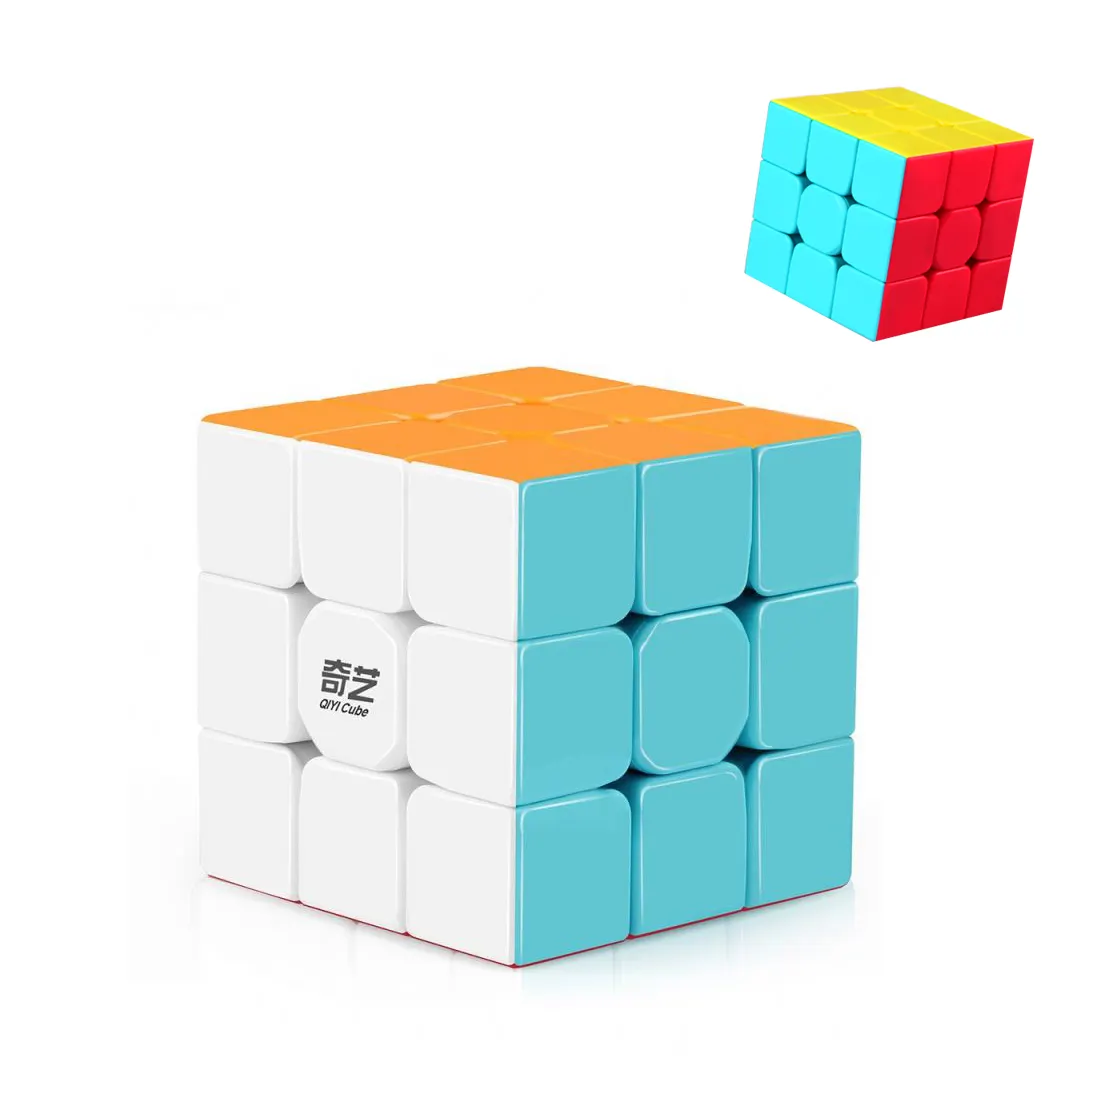 Qiyi Warrior W 3x3 스피드 큐브 Stickerless 3x3x3 매직 큐브 퍼즐 완구 어린이를위한 쉬운 회전 및 내구성 완구 EXW